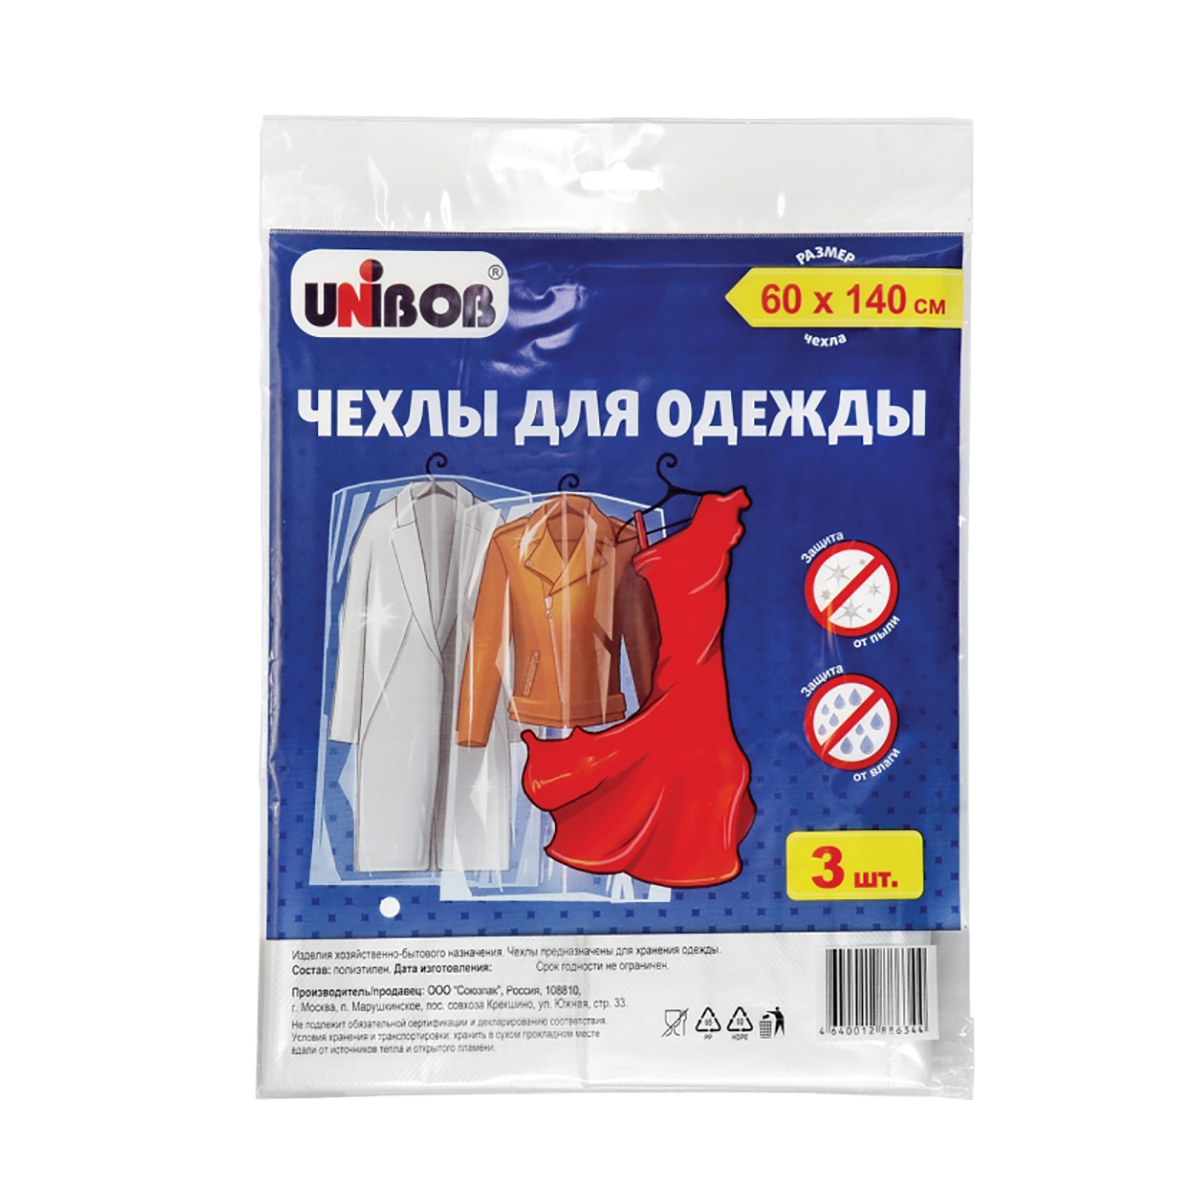 Чехлы для одежды полиэтилен. 60 х 140 см (упак. 3 шт.) (1/200) "unibob"